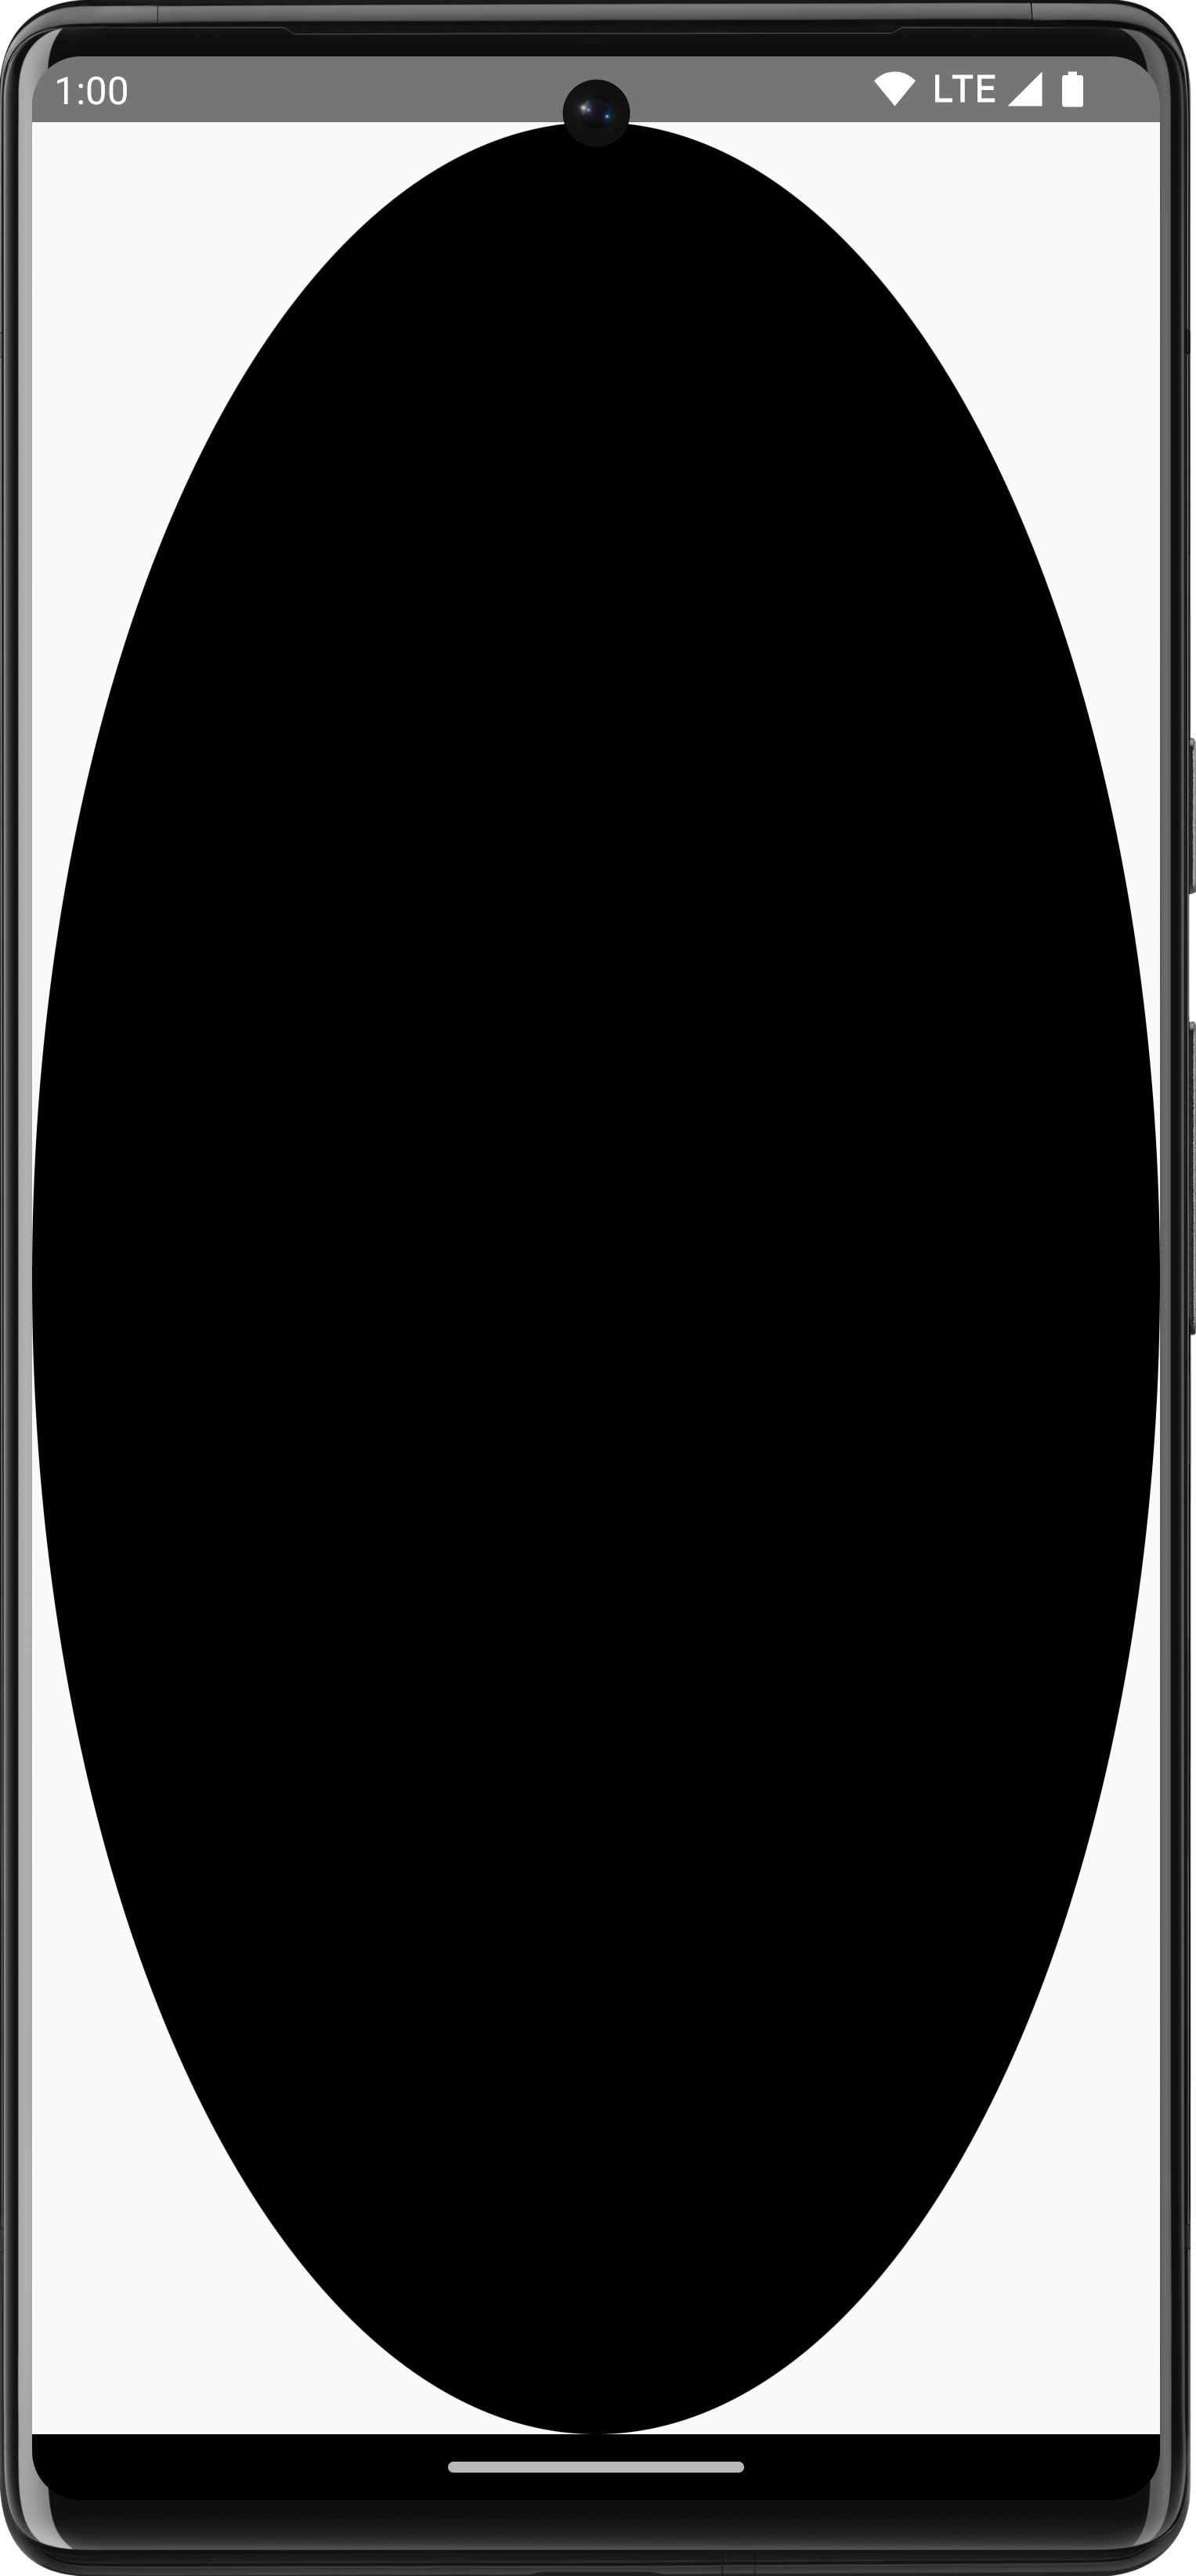 Un oggetto ShapeDrawable ovale nero che occupa la grandezza originale